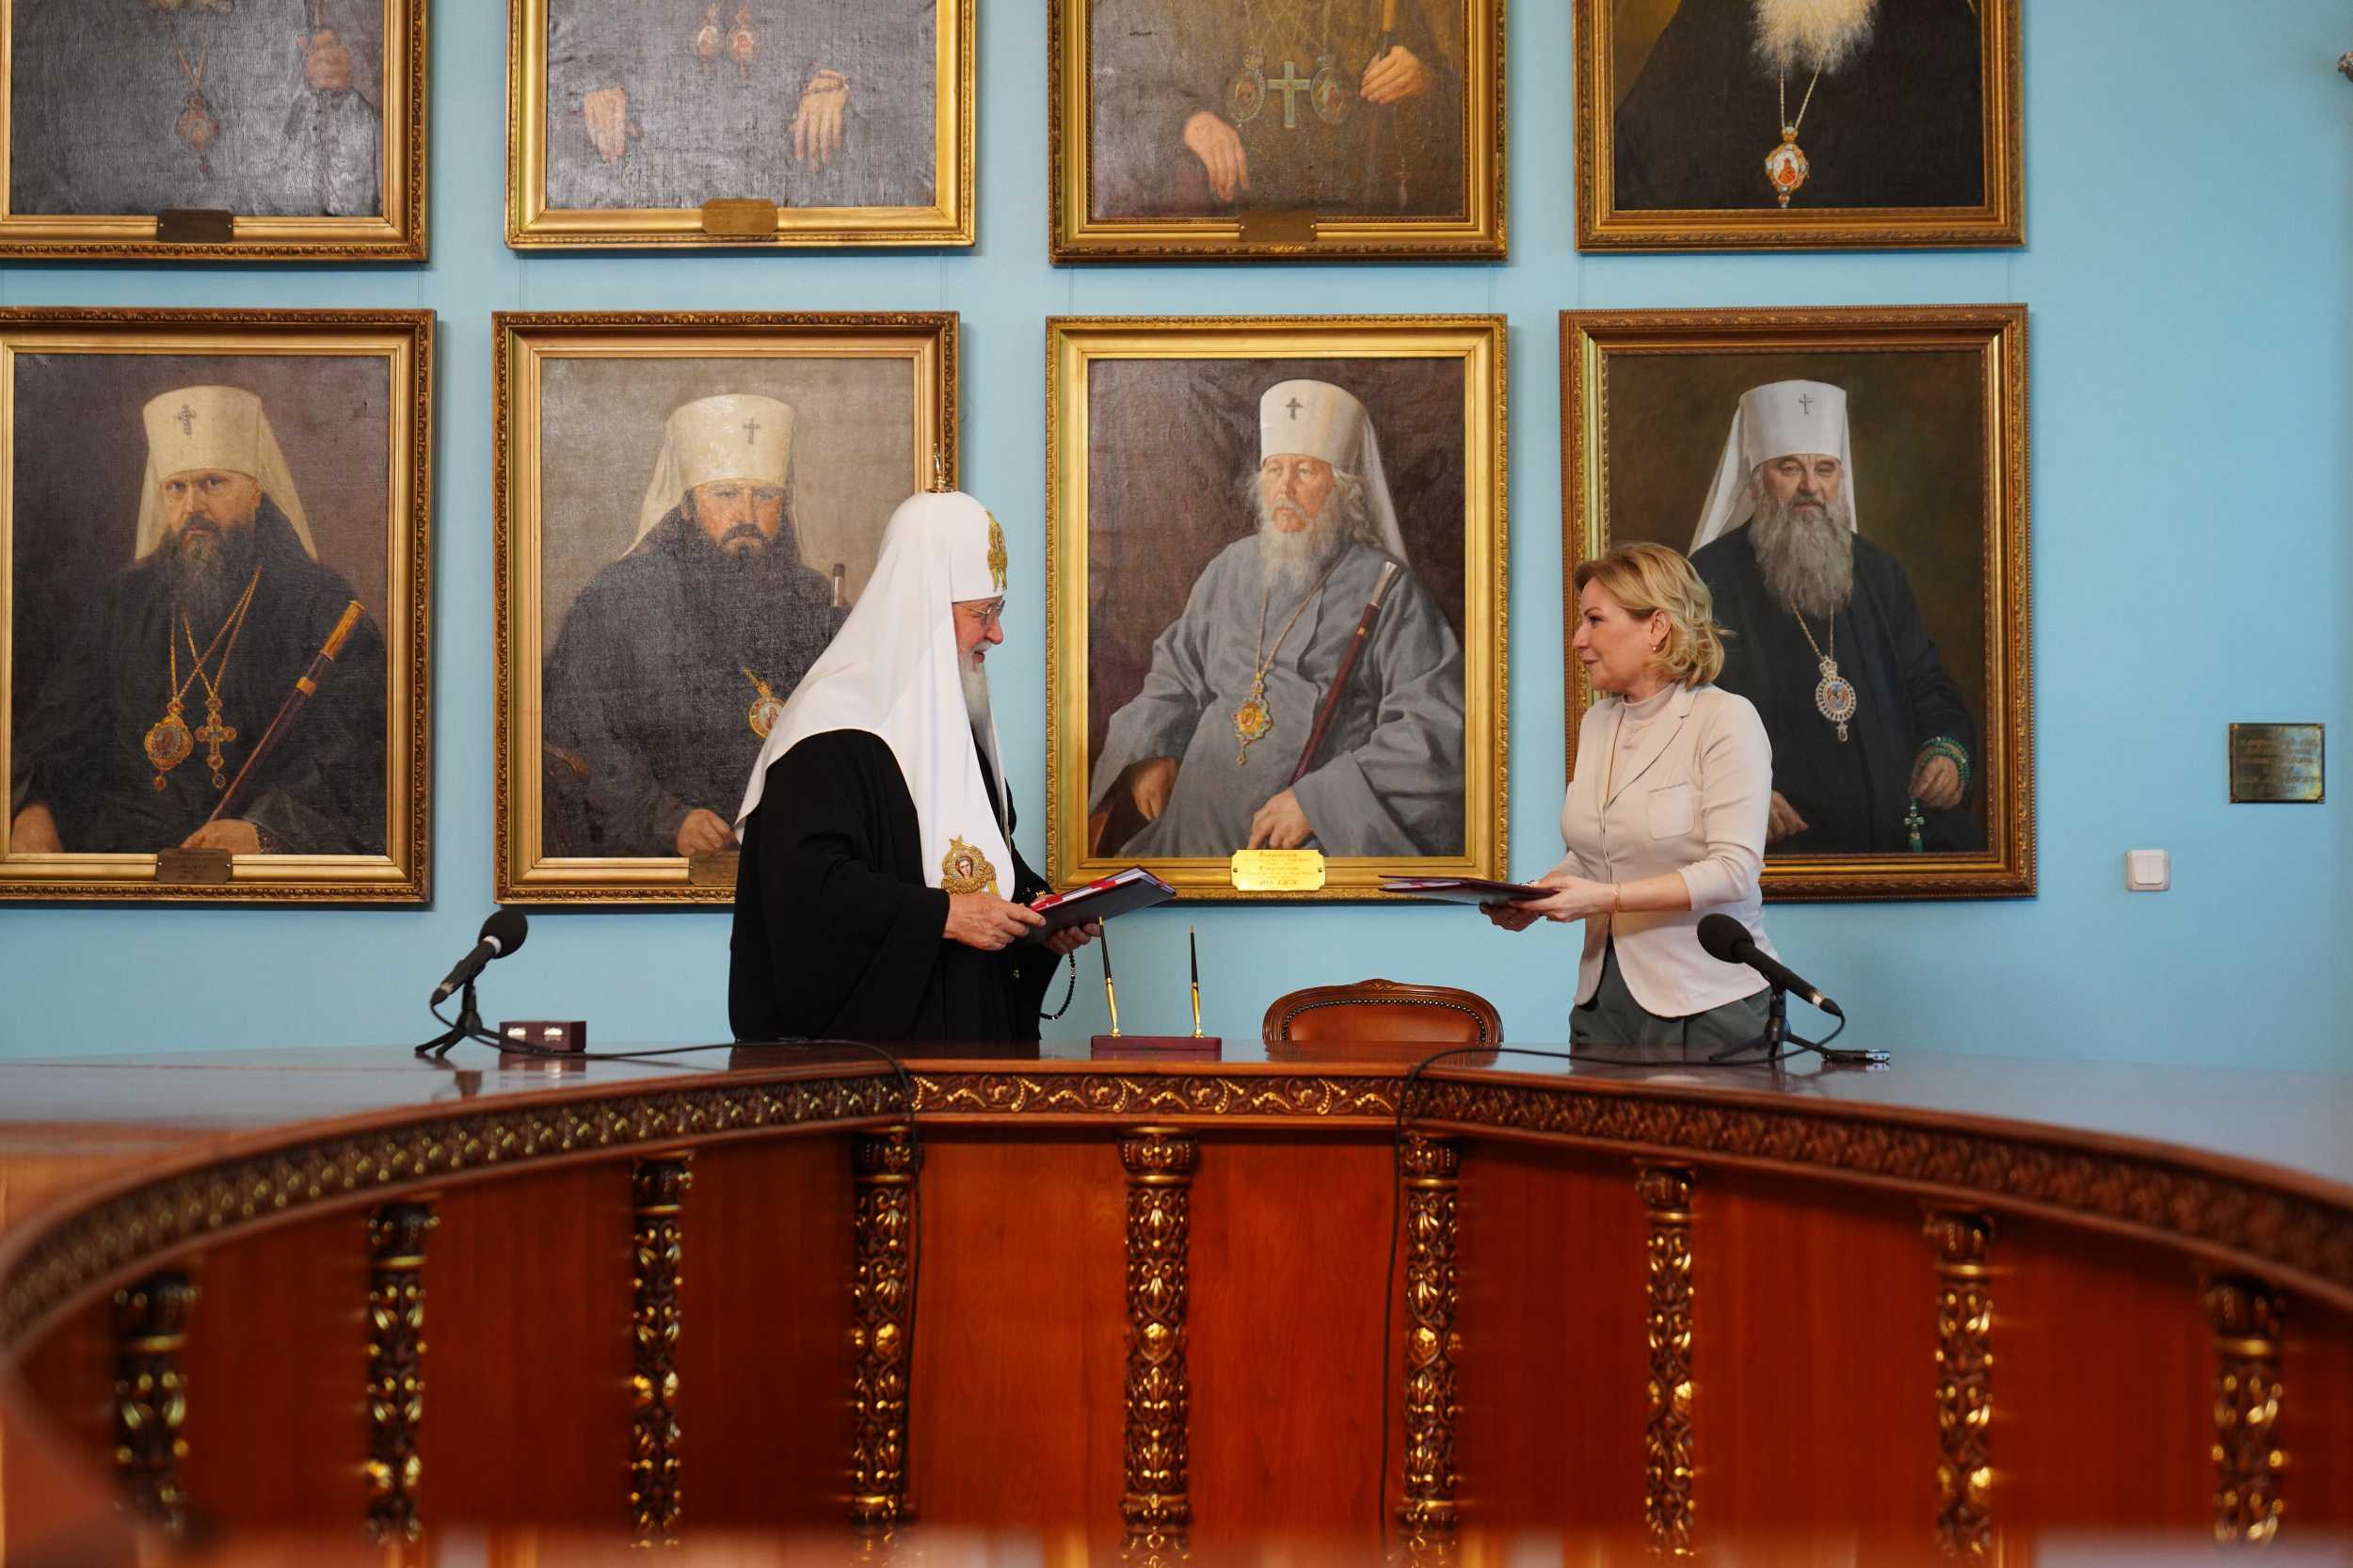 РПЦ сообщает о передаче ей иконы «Троица» по договору